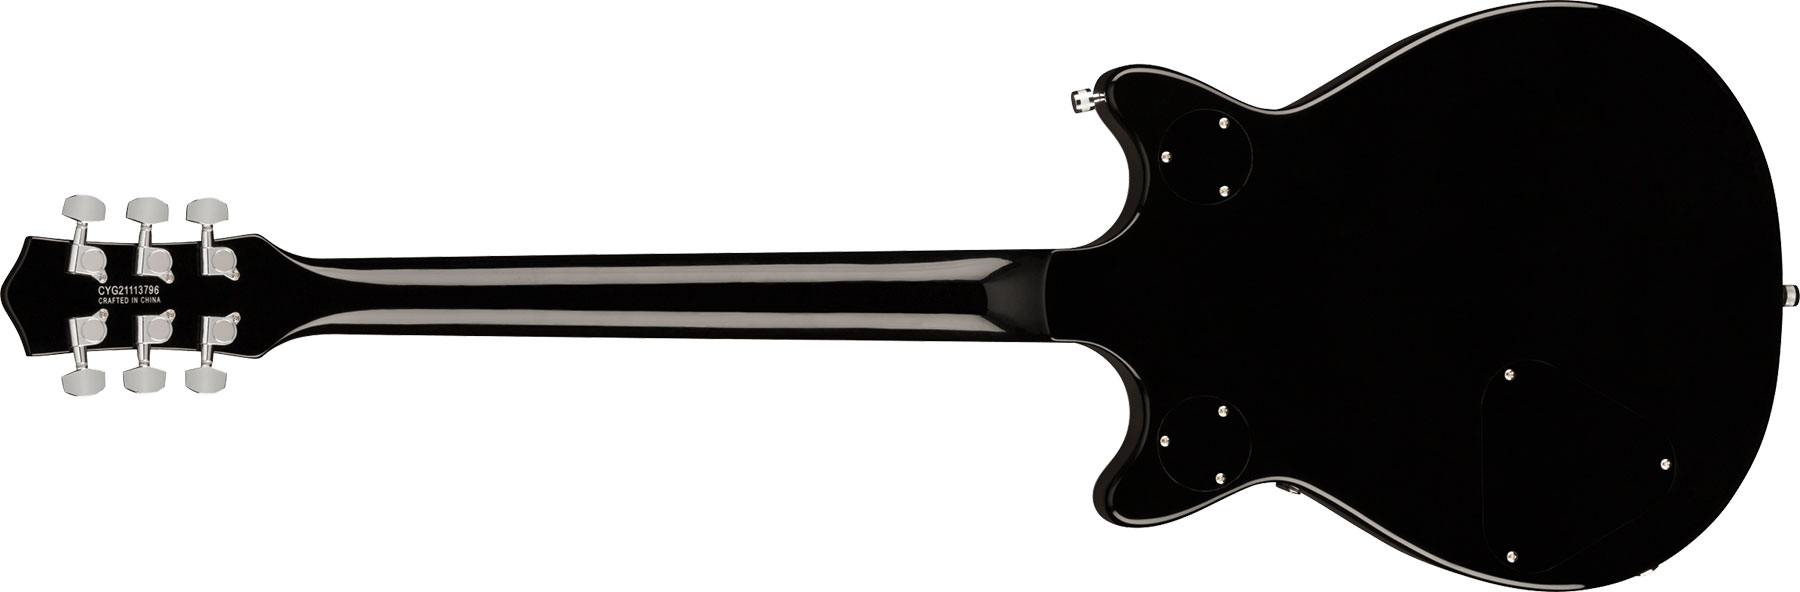 Gretsch G5222 Electromatic Double Jet Bt V-stoptail Hh Ht Lau - Black - Guitarra eléctrica de doble corte - Variation 1